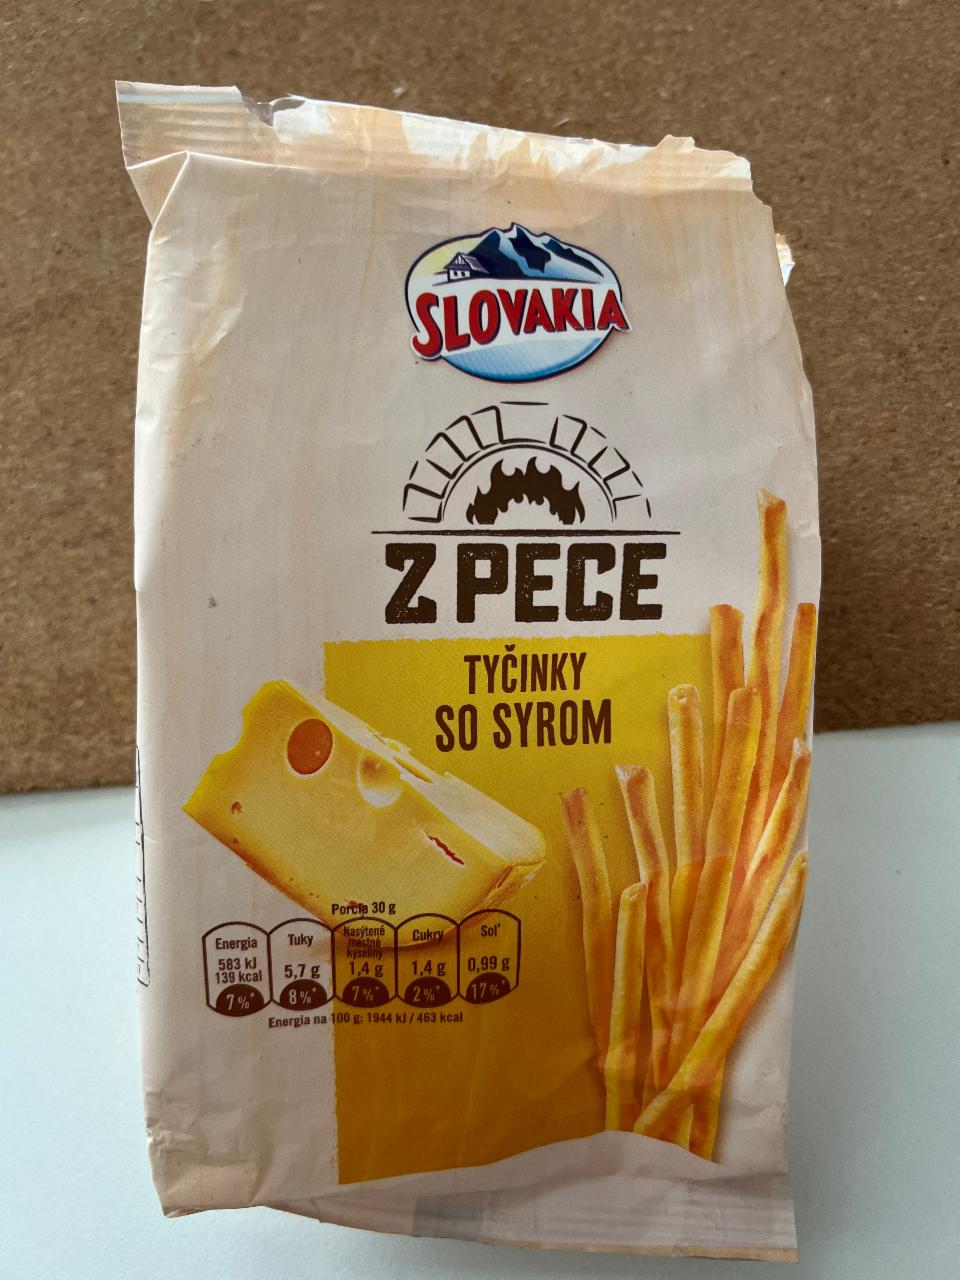 Fotografie - Tyčinky so syrom Slovakia z pece